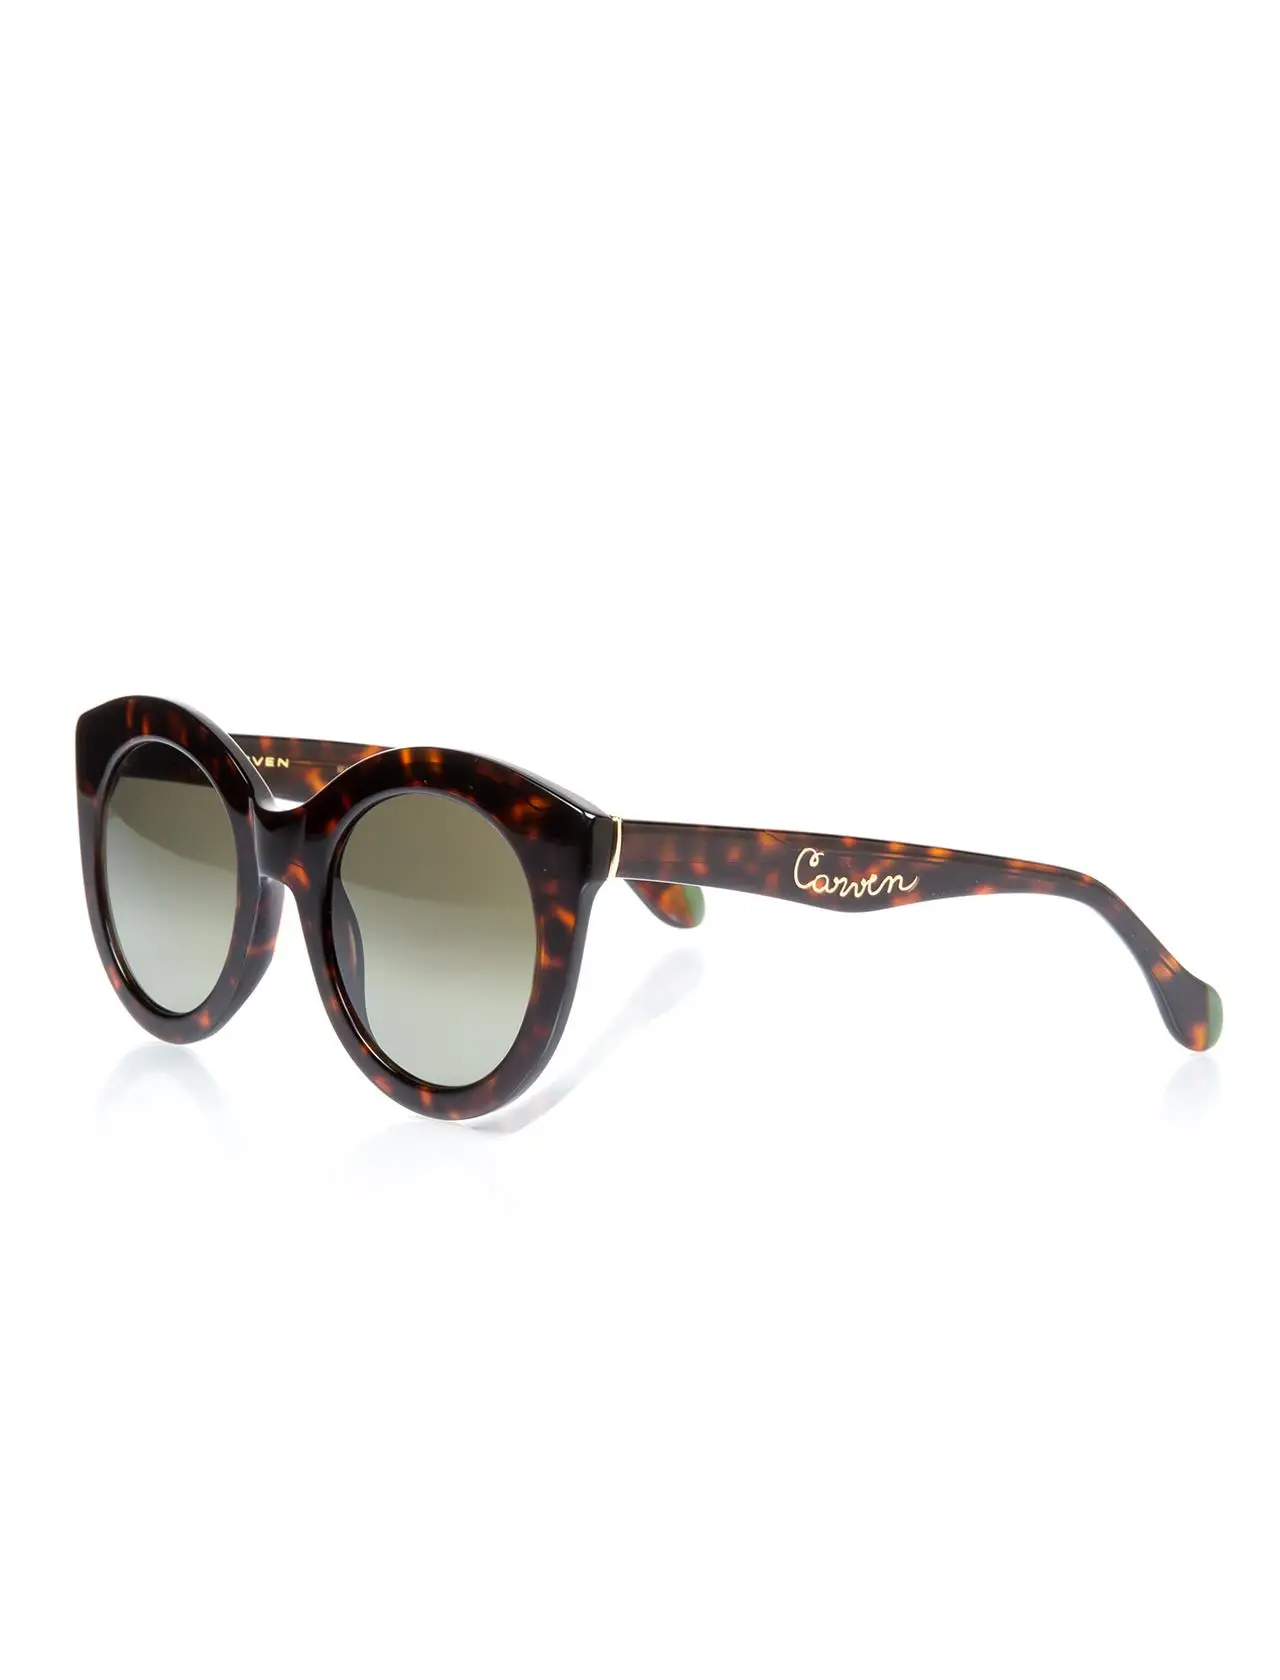 

Women's sunglasses crv 4002 e091 bone Brown organic oval aval 49-23-135 carven